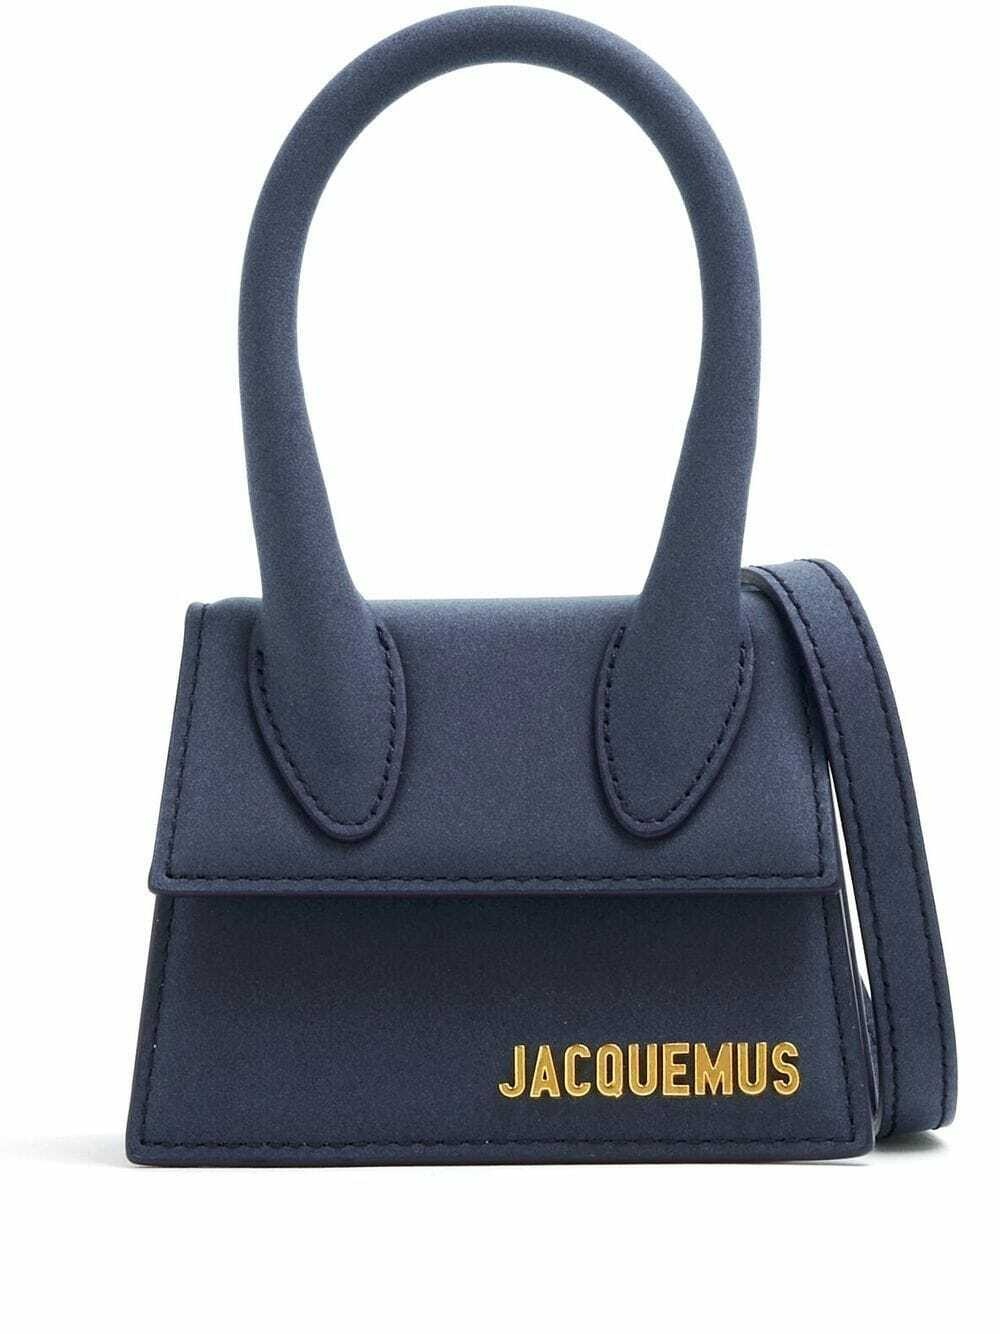 Jacquemus Le Chiquito Mini Bag Dark Navy